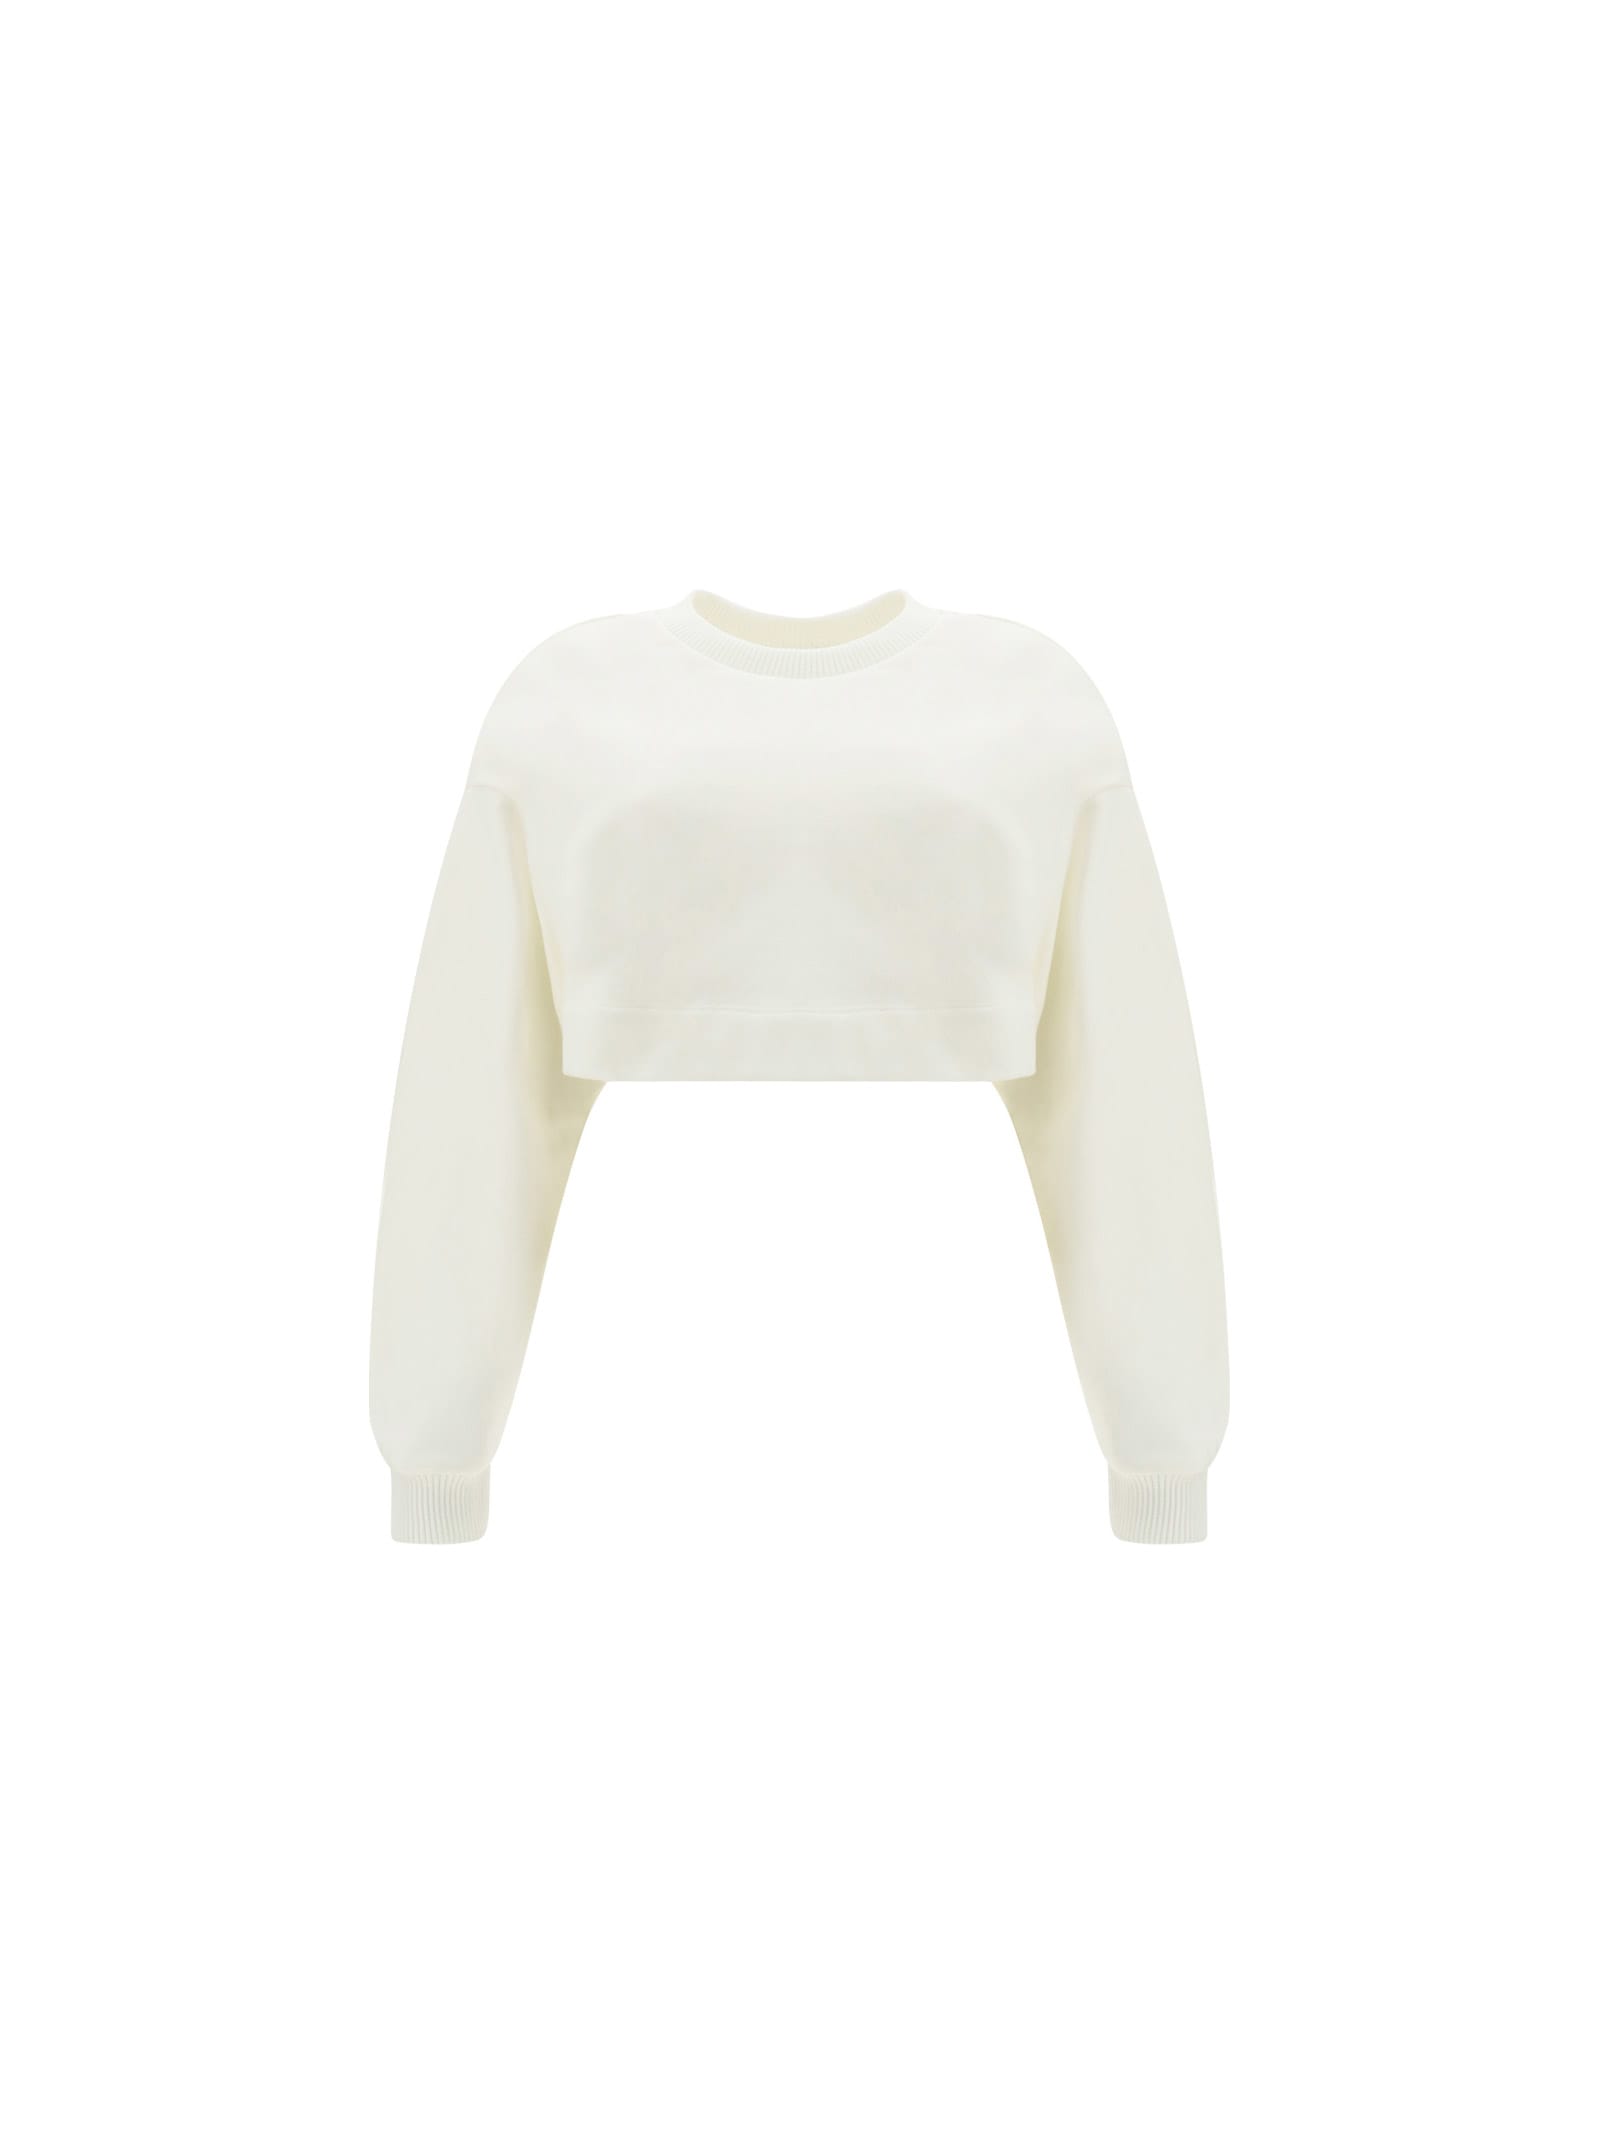 Alexander McQueen Cropped Sweatshirt